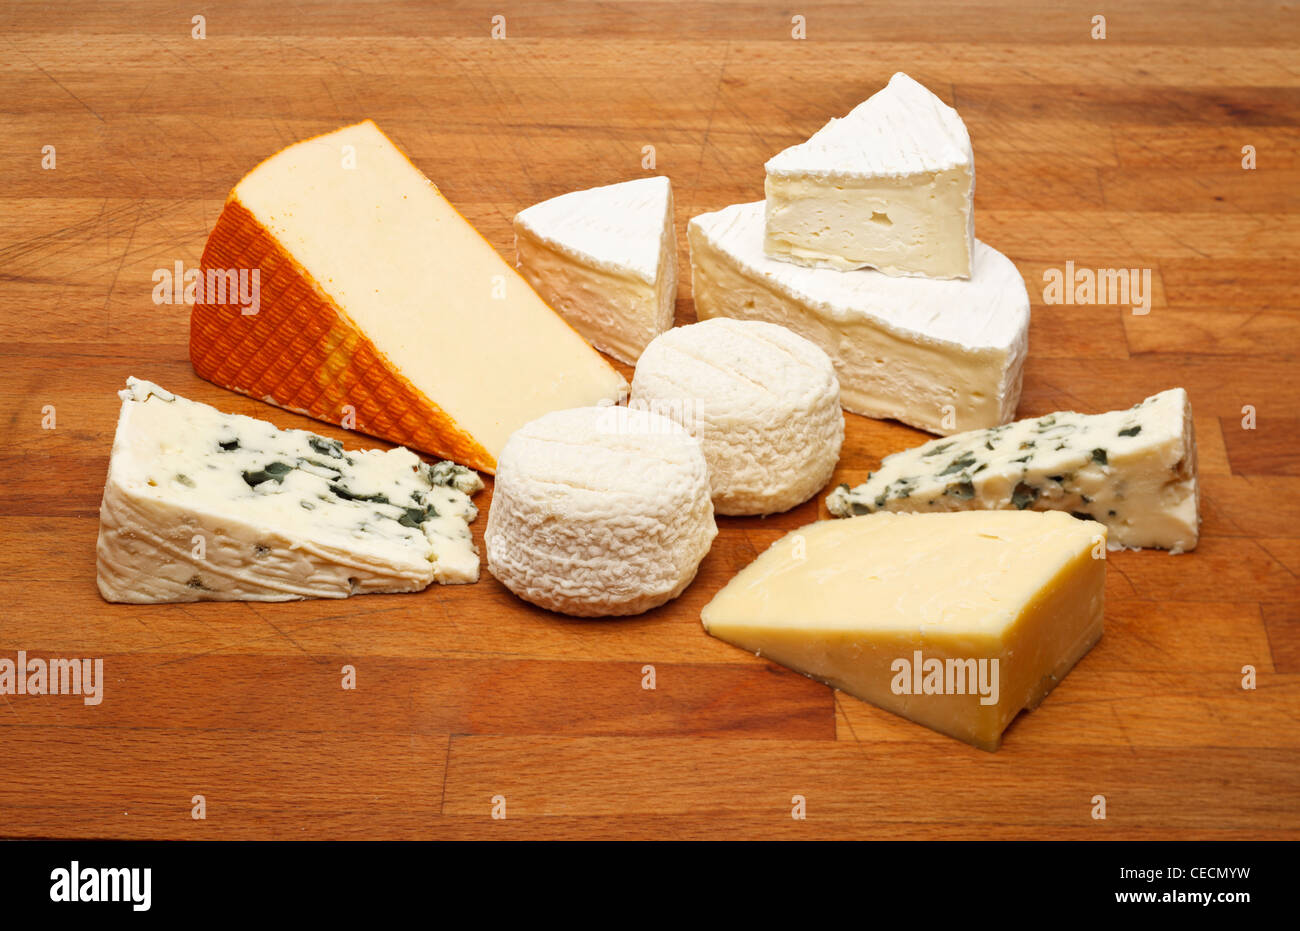 Fromage sur une planche en bois - Roquefort, camembert, cheddar, fromage de chèvre et St Paulin Banque D'Images